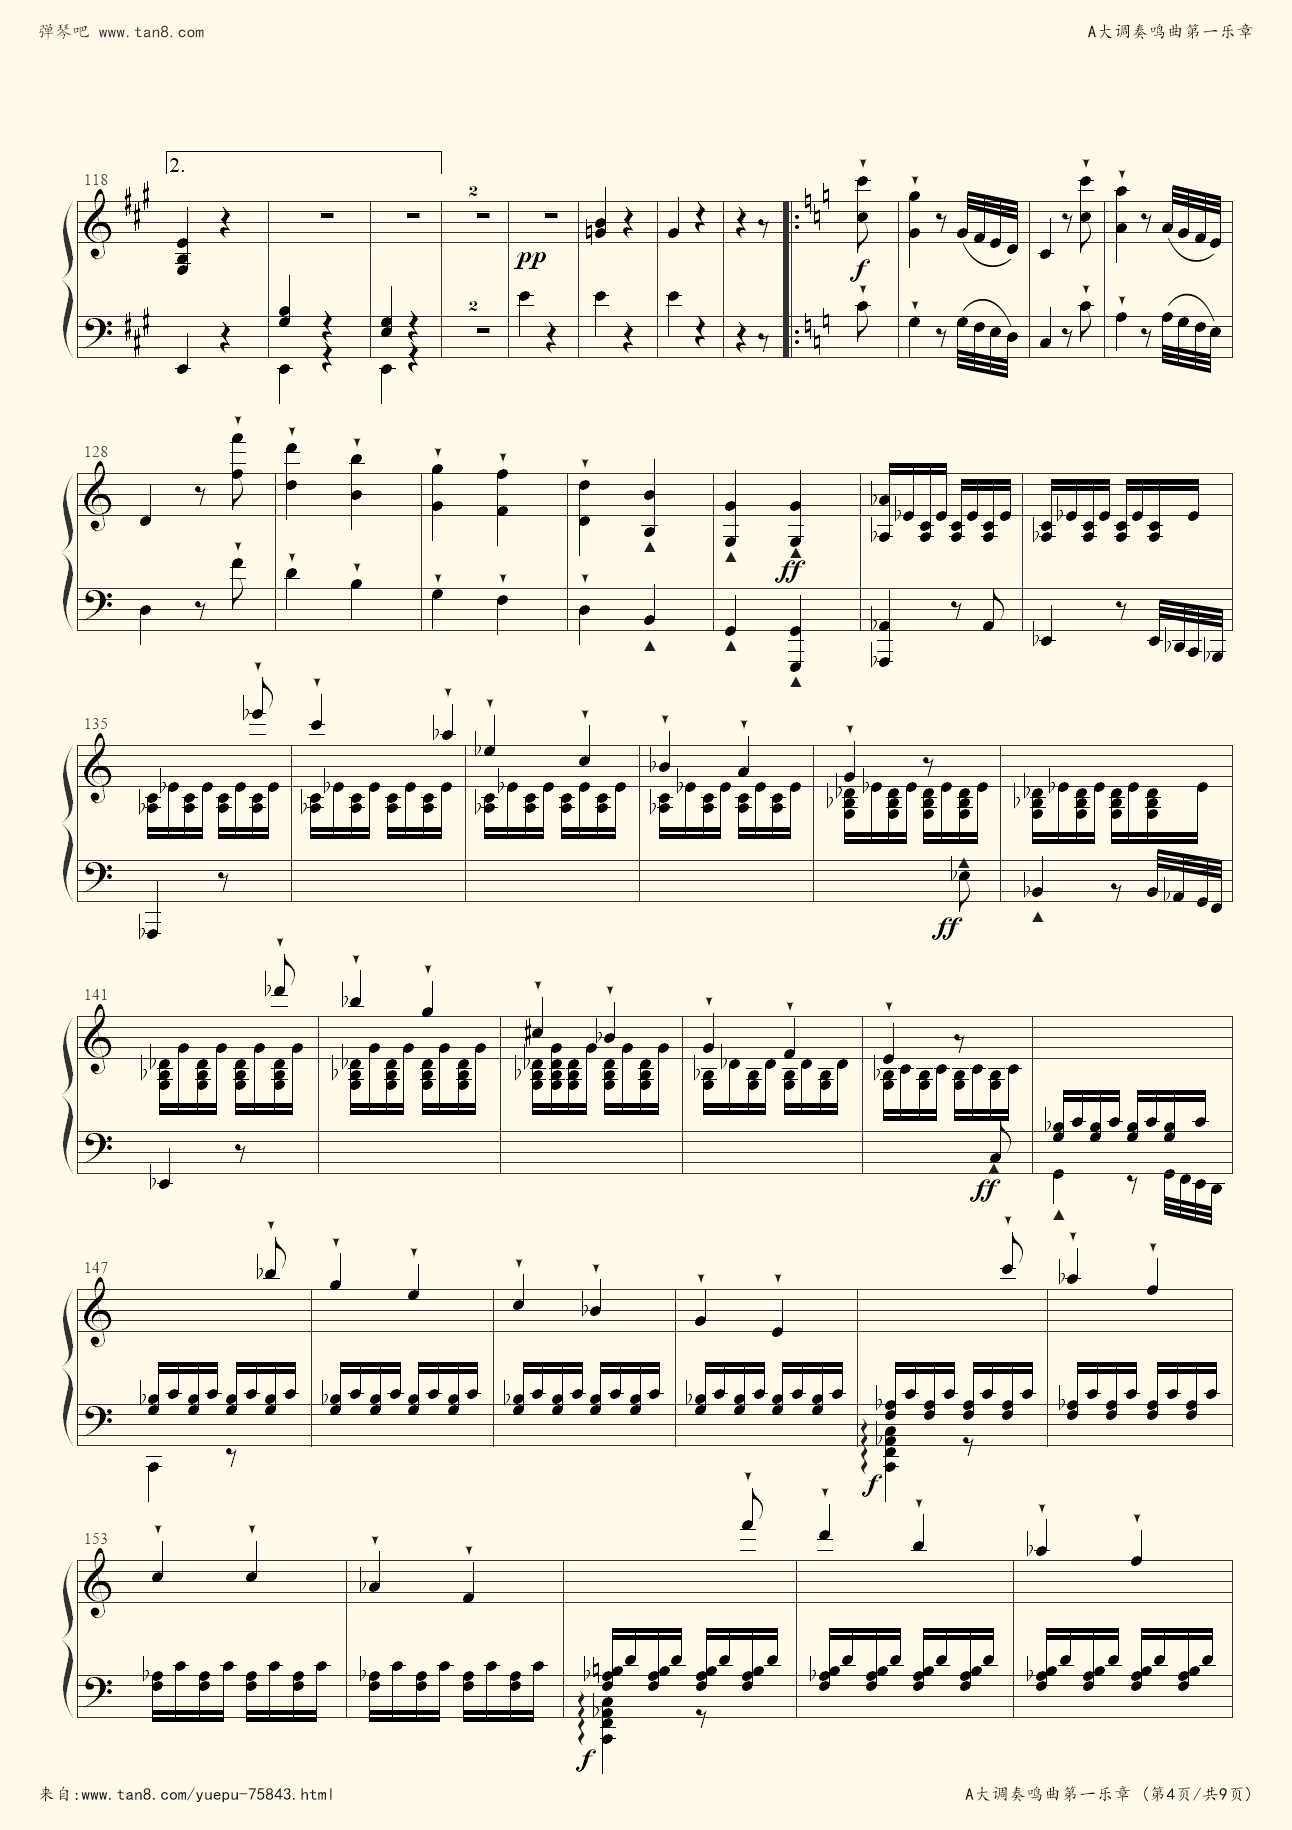 贝多芬钢琴奏鸣曲op2no1第二乐章(贝多芬钢琴奏鸣曲op2no1第二乐章曲式分析)